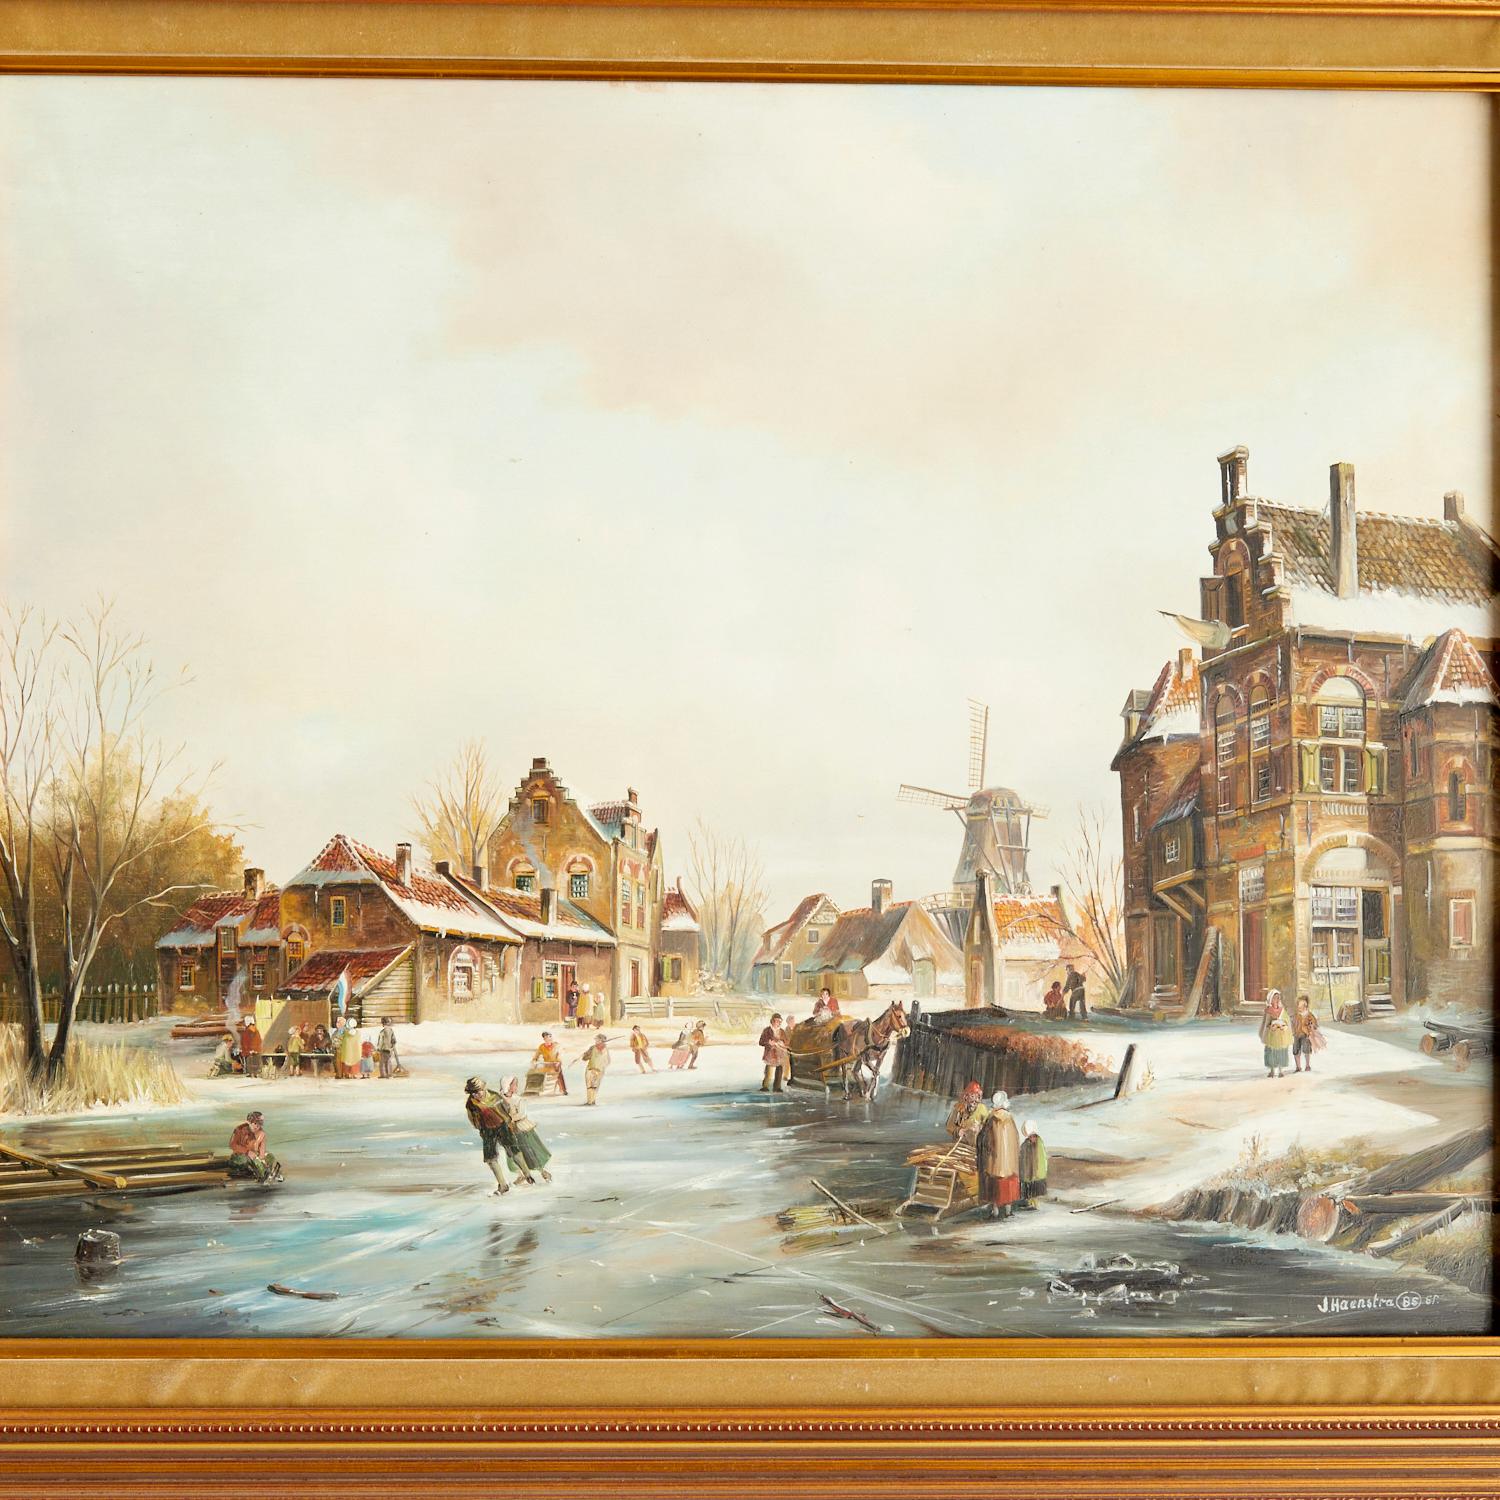 John Haanstra (Néerlandais, né en 1940), signé et daté de 1985 en bas à droite. Une charmante peinture à l'huile, représentant un paysage d'hiver. Les patineurs profitent des plaisirs de la saison sur un canal gelé tandis que d'autres vaquent à